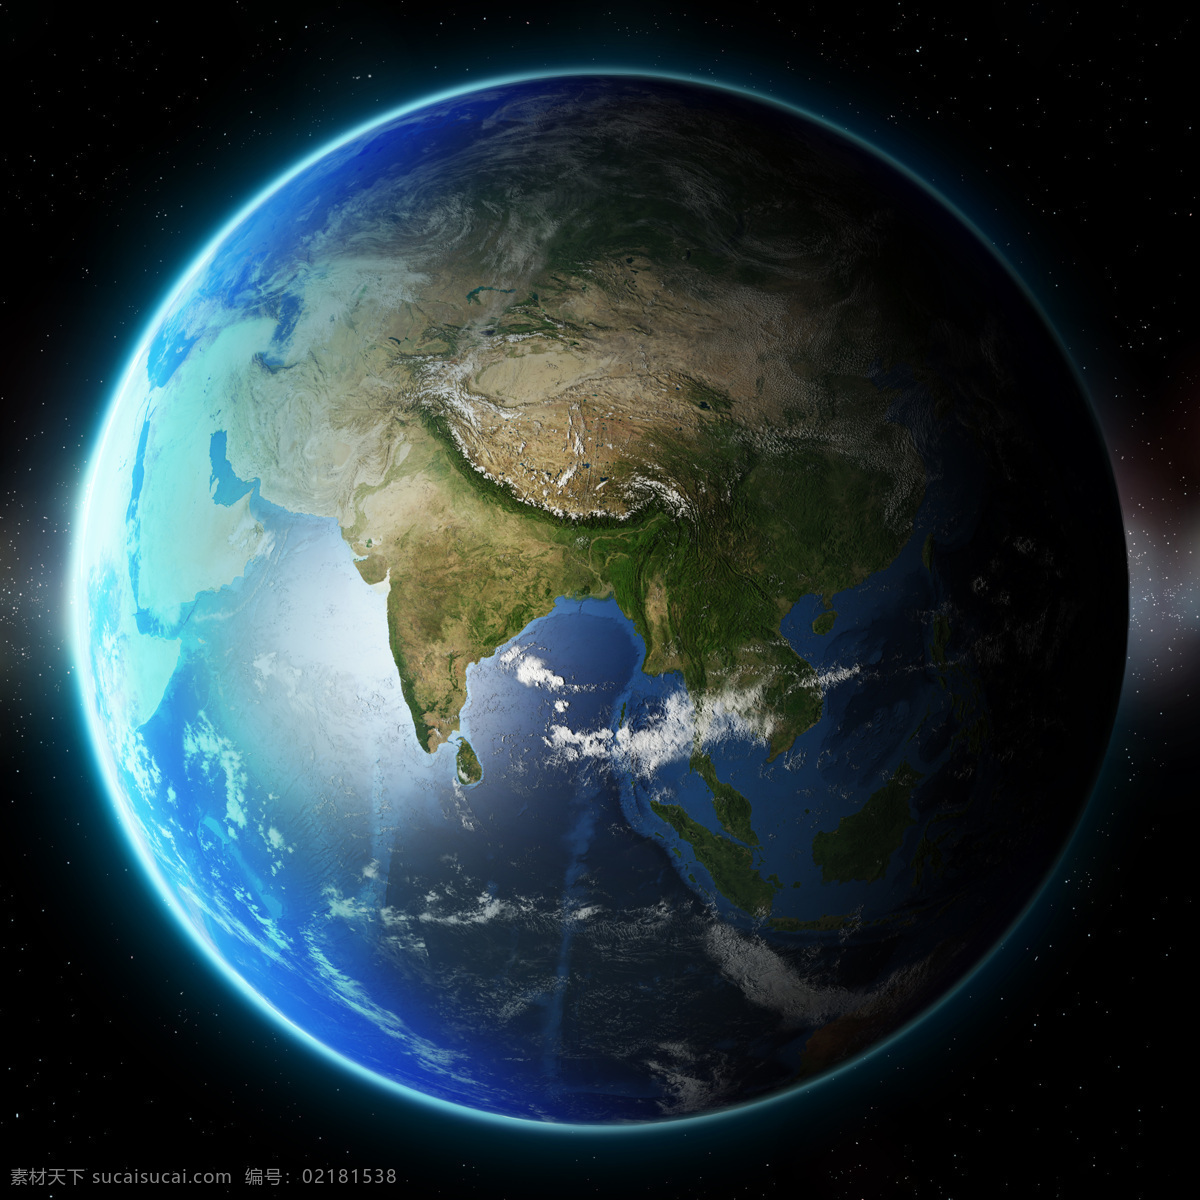 地球 上 印度 版块 印度版块 家园 地球母亲 宇宙 星球 星空 行星 地球表面 地球图片 环境家居